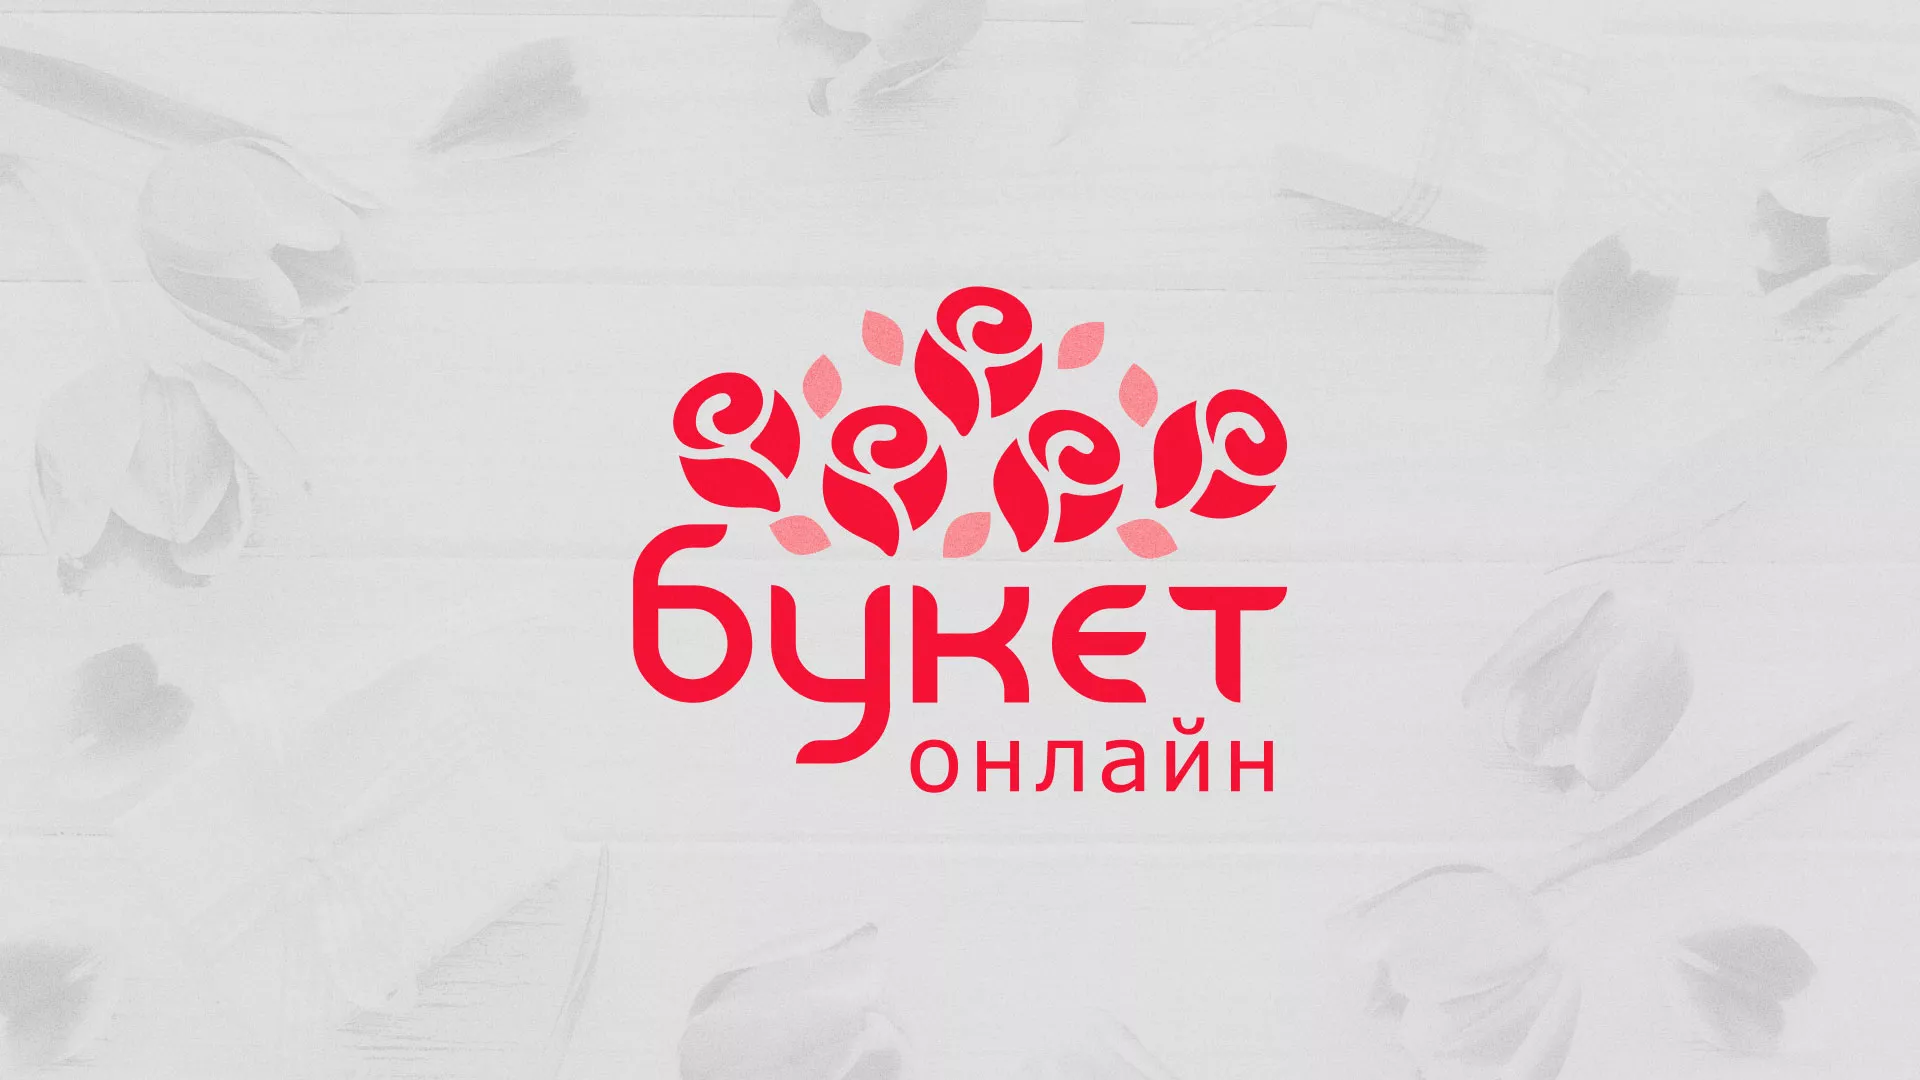 Создание интернет-магазина «Букет-онлайн» по цветам в Николаевске-на-Амуре